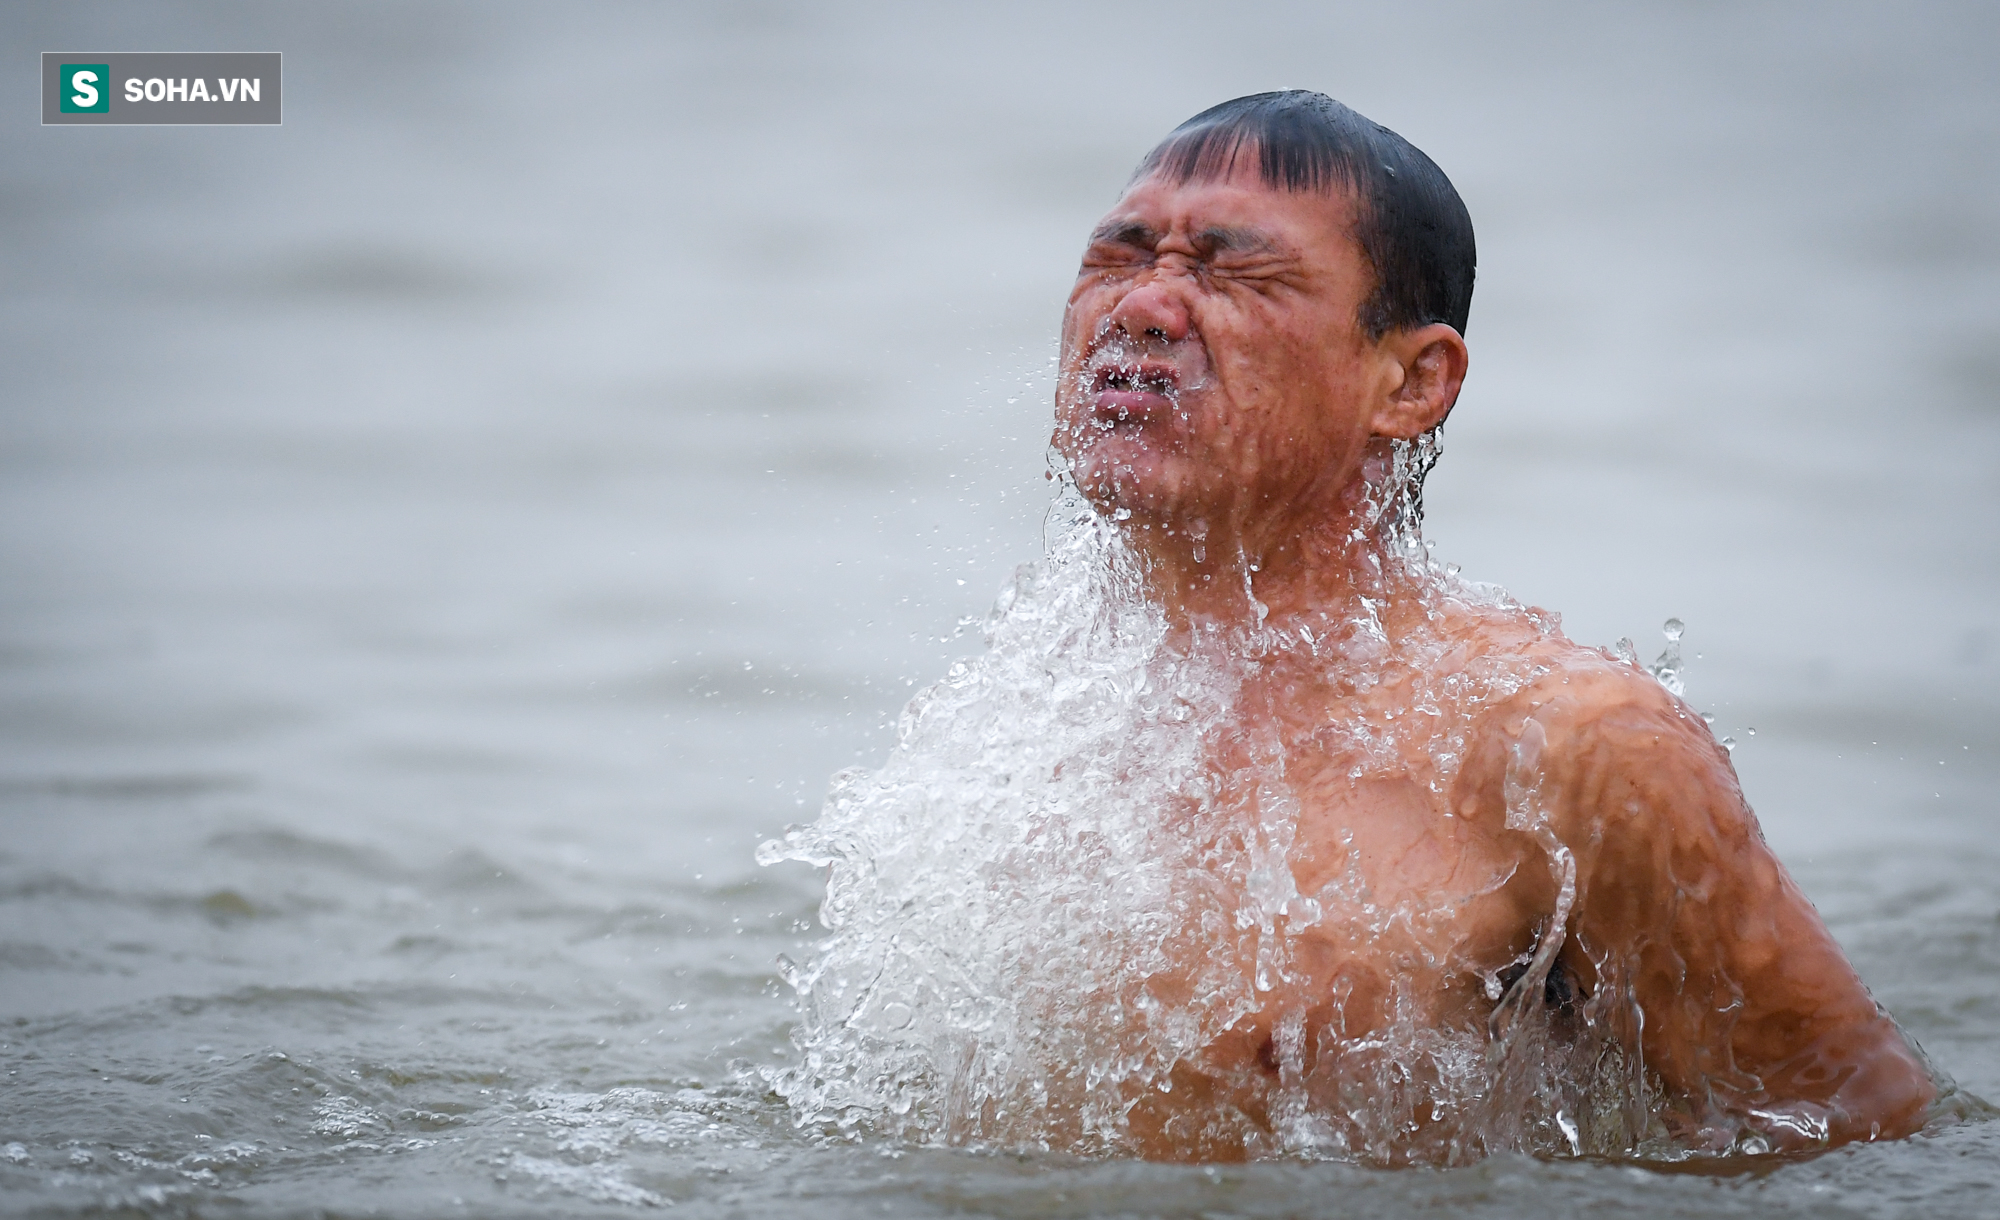 Nhiều người khoả thân lao xuống sông Hồng trong cái lạnh 15 độ C - Ảnh 5.